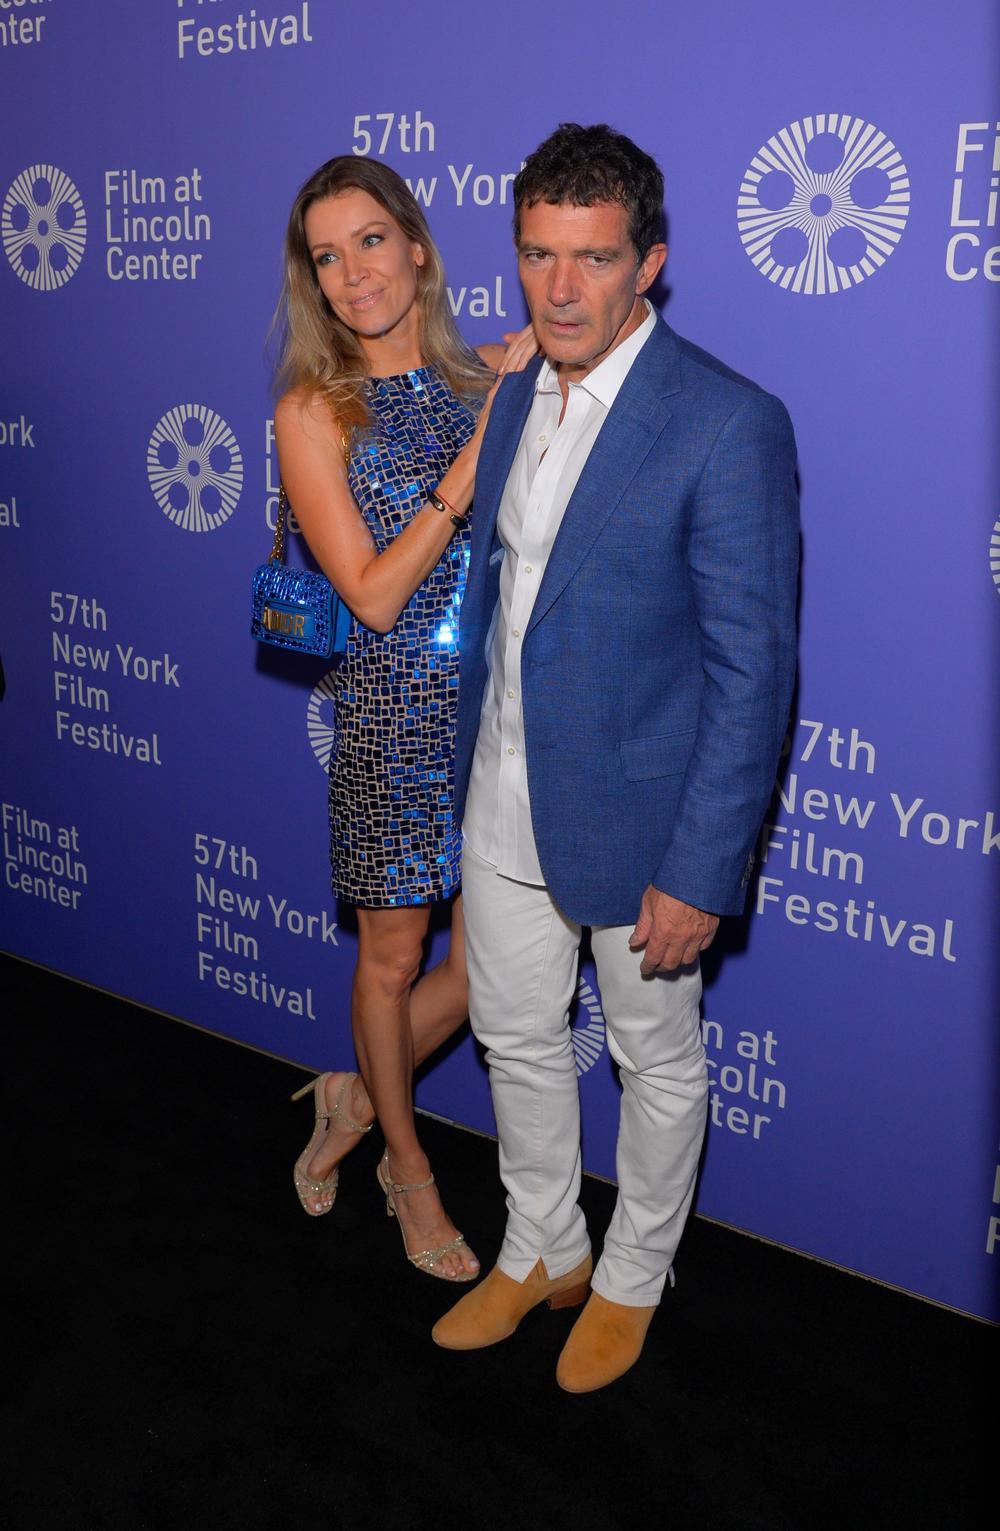 <p><br />
Glumac Antonio Banderas (59) bio je sinoć na premijeri filma "Pain and glory" na Njujorškom filmskom festivalu sa svojom 20 godina mlađom partnerkom Nikol Kimpel.</p>